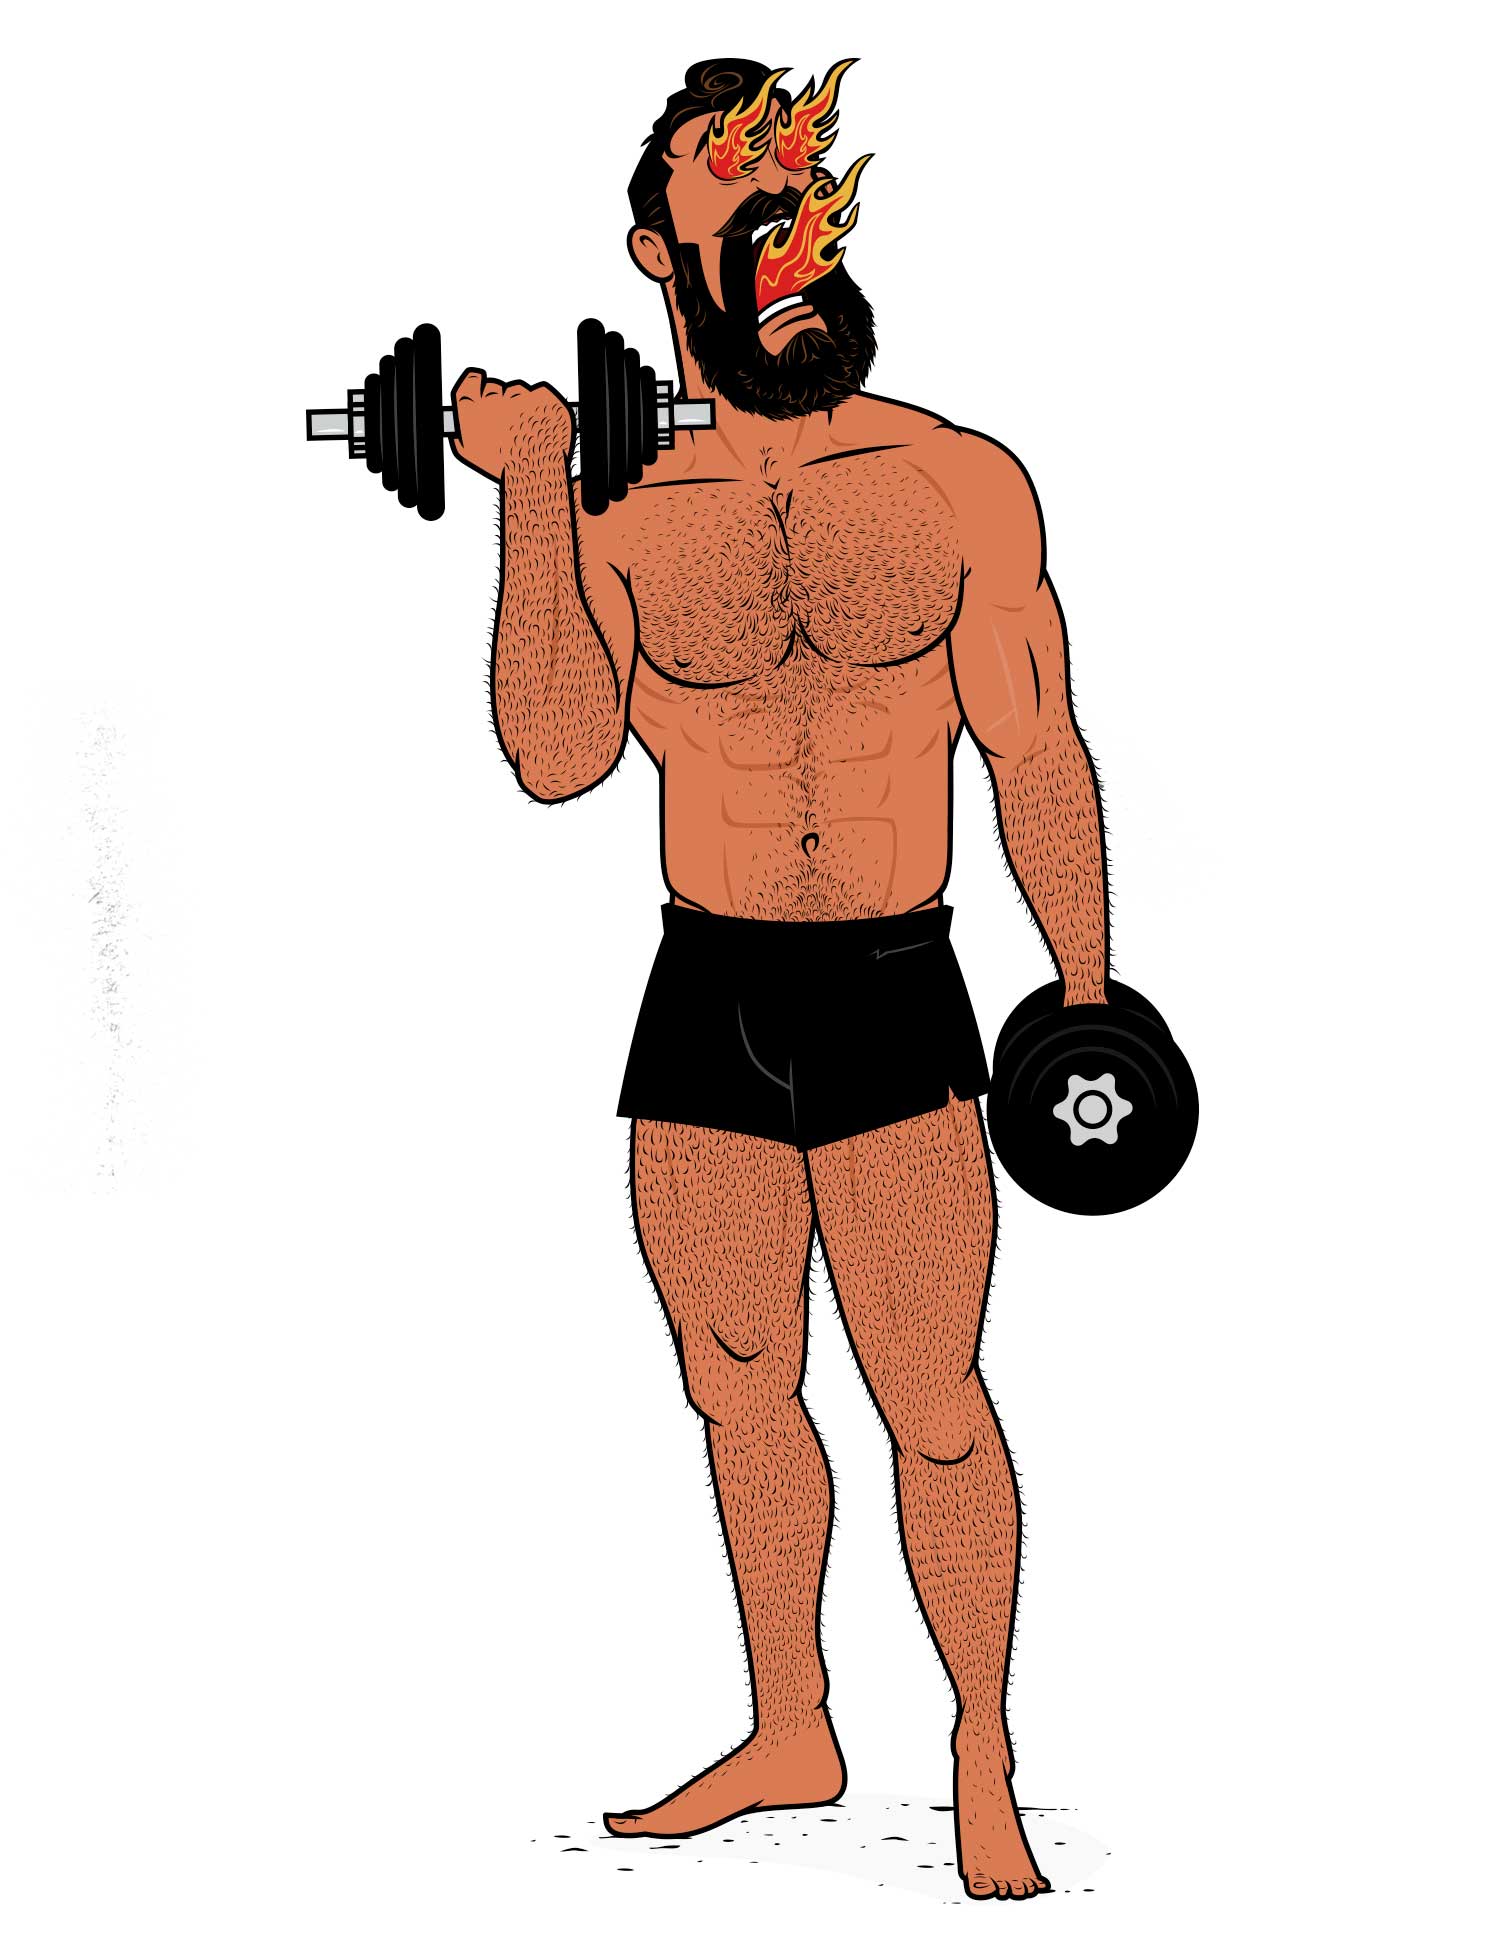 Illustration of a bodybuilder doing biceps curls.